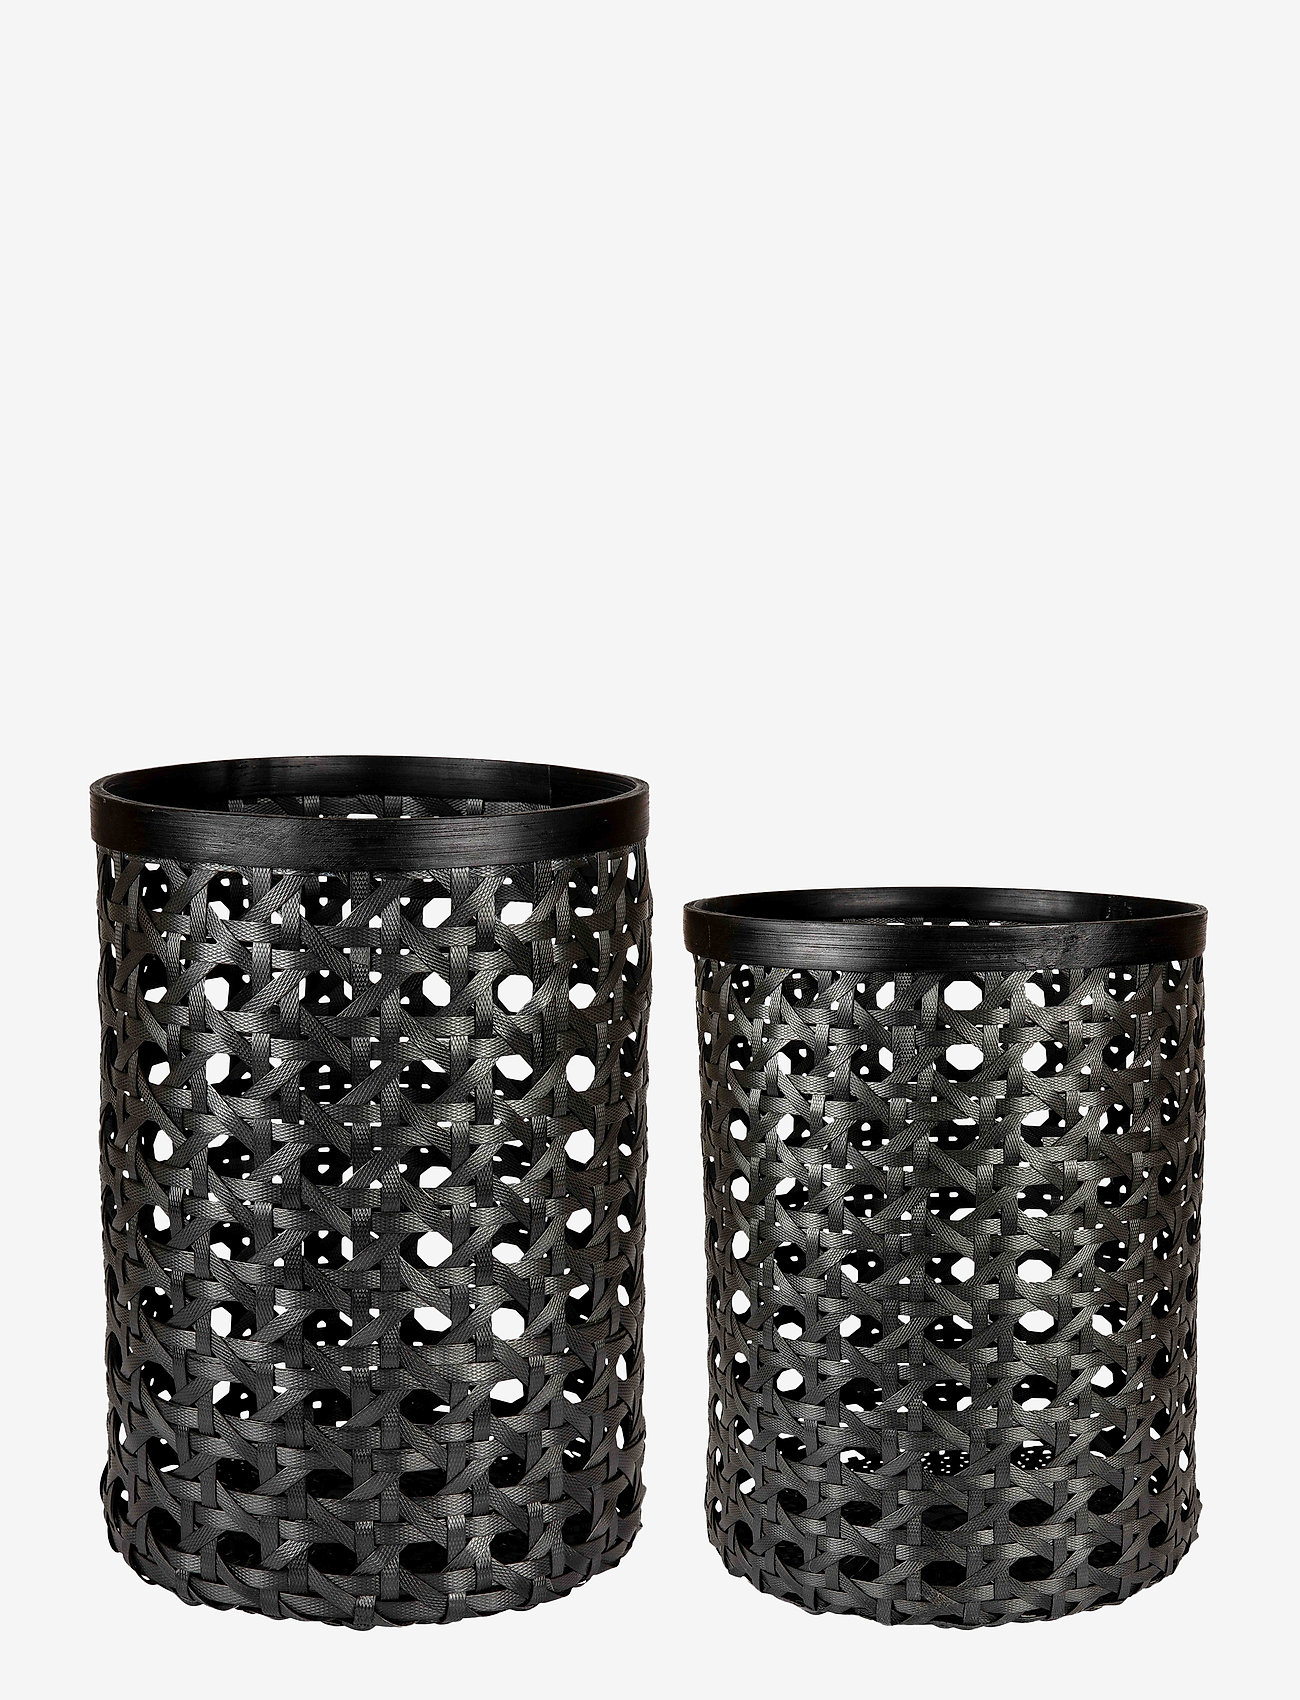 DAY Home - Day Black Bamboo strap basket, set of 2pcs - opbergmanden - black - 0